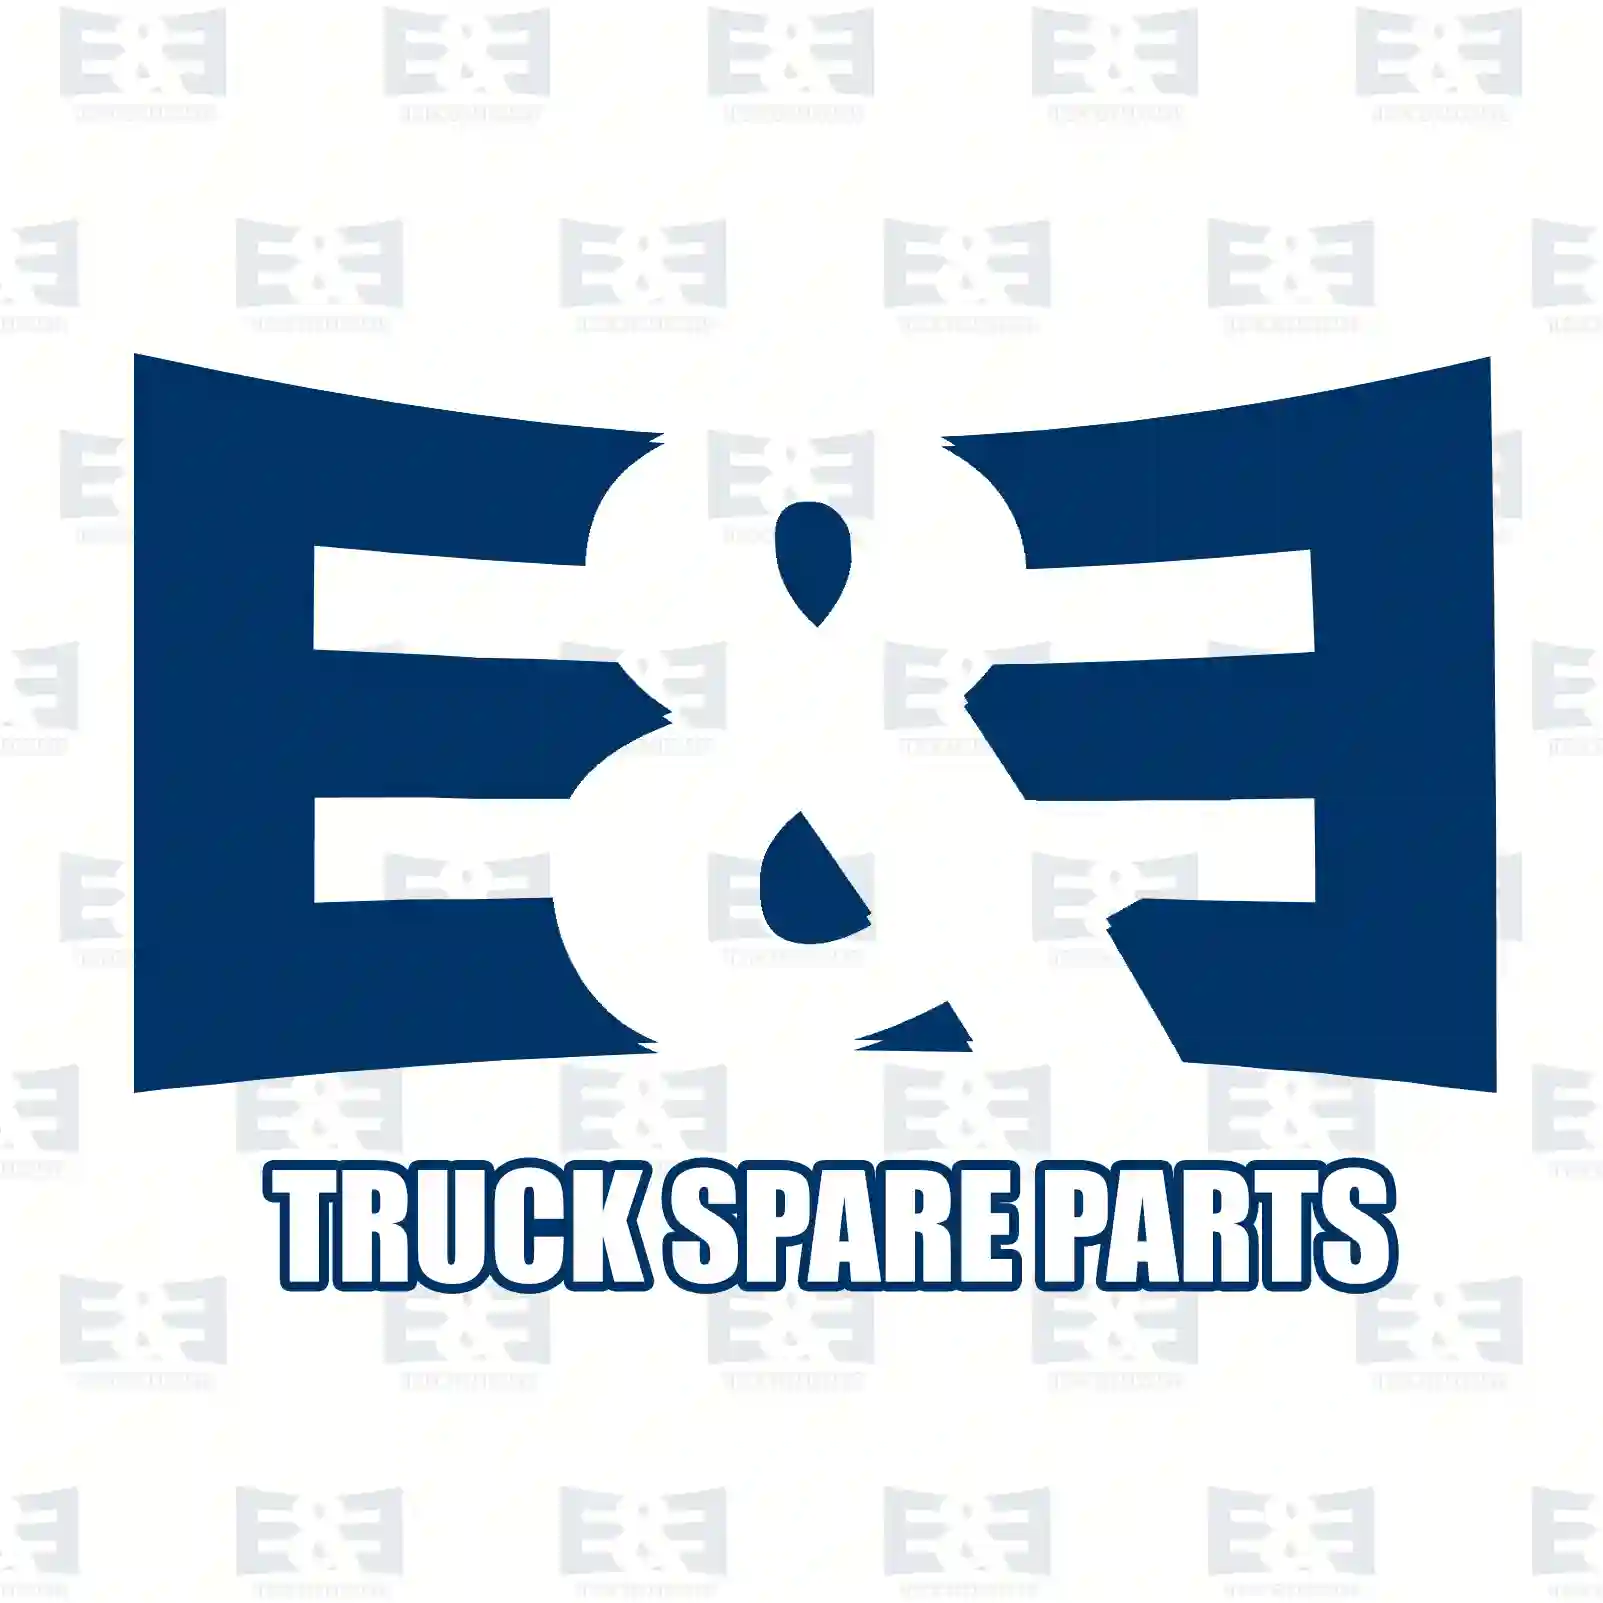 Lock, left, 2E2292074, 3227200035, 3447200035, 3447207035 ||  2E2292074 E&E Truck Spare Parts | Truck Spare Parts, Auotomotive Spare Parts Lock, left, 2E2292074, 3227200035, 3447200035, 3447207035 ||  2E2292074 E&E Truck Spare Parts | Truck Spare Parts, Auotomotive Spare Parts